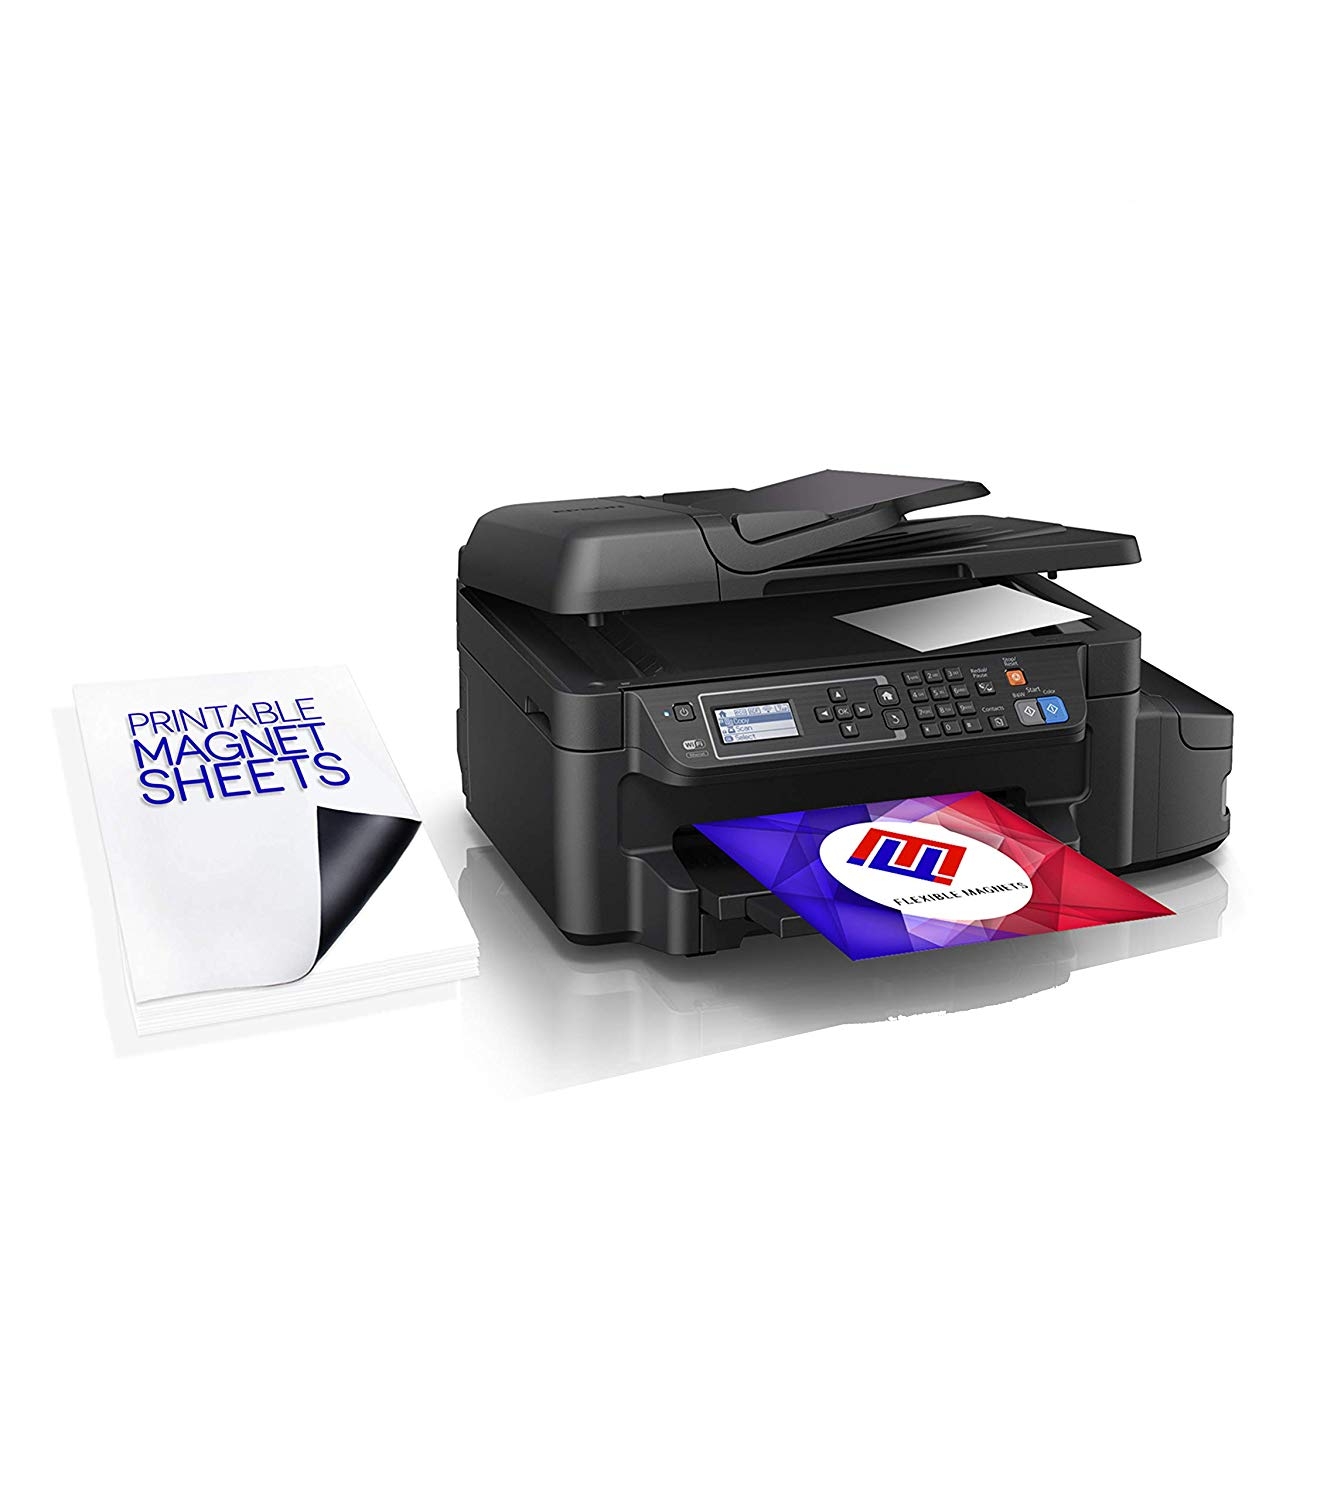 Printable Magnet Sheets For Laser Printer